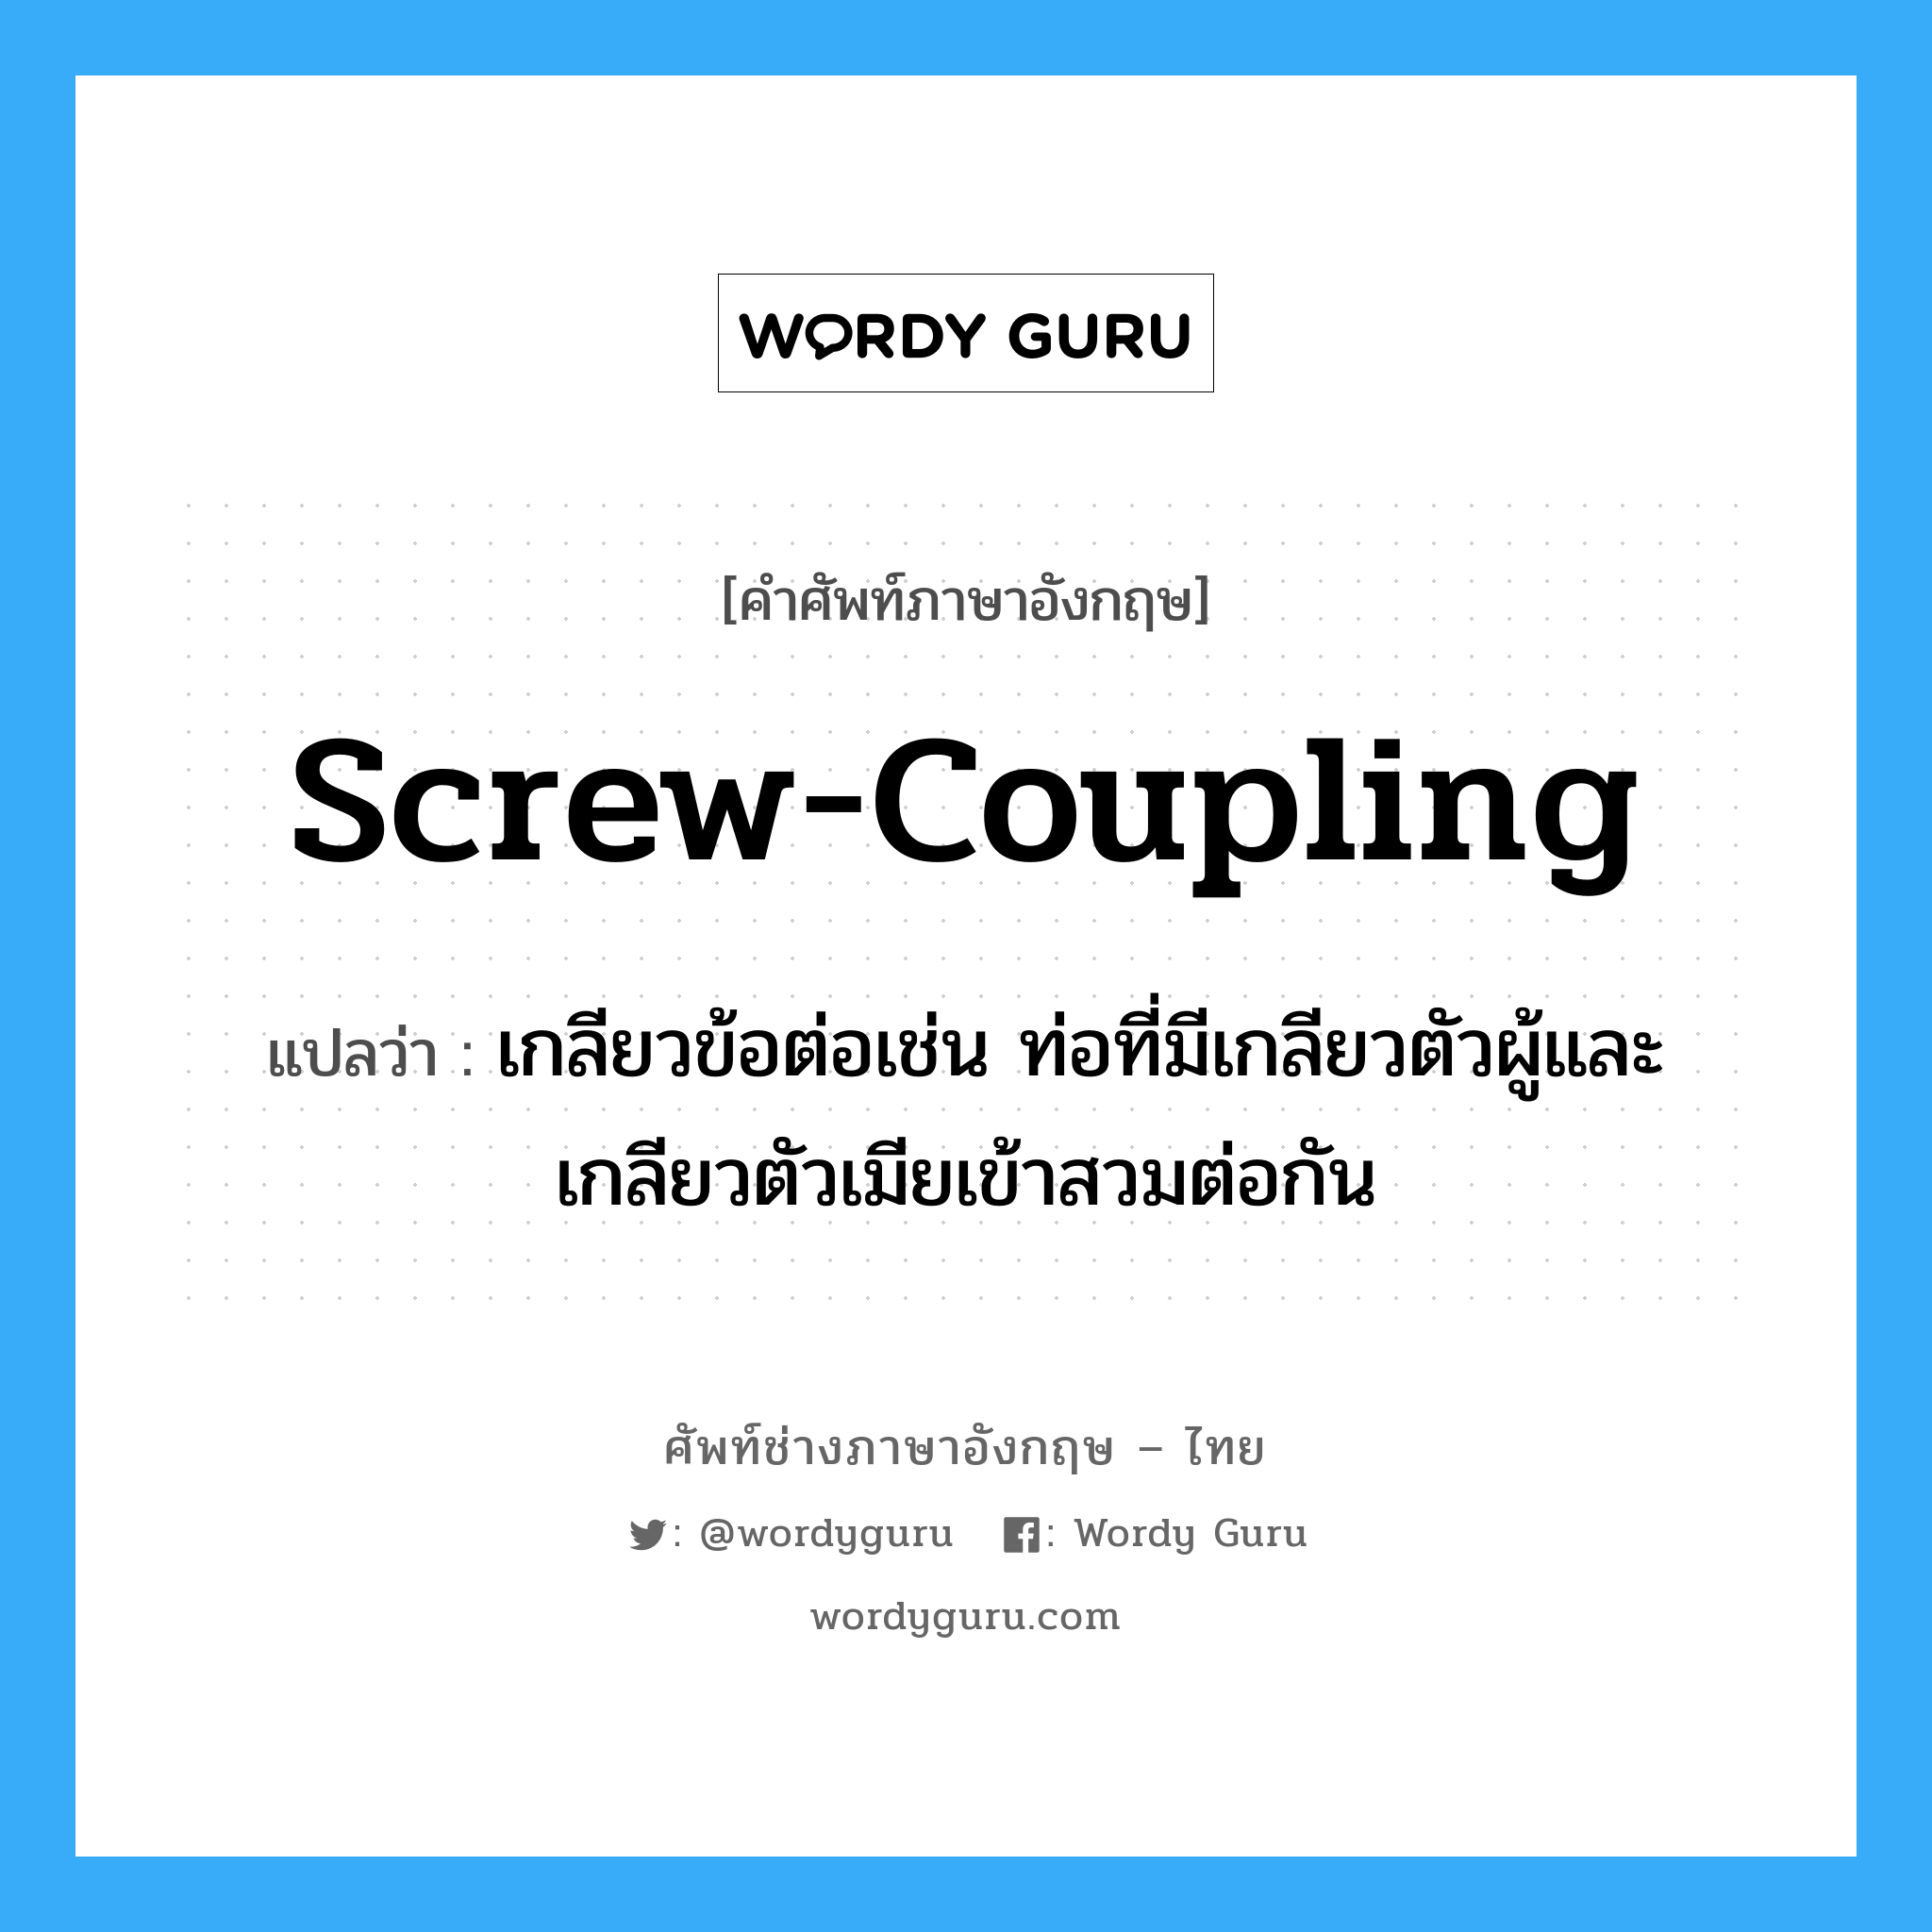 screw-coupling แปลว่า?, คำศัพท์ช่างภาษาอังกฤษ - ไทย screw-coupling คำศัพท์ภาษาอังกฤษ screw-coupling แปลว่า เกลียวข้อต่อเช่น ท่อที่มีเกลียวตัวผู้และเกลียวตัวเมียเข้าสวมต่อกัน